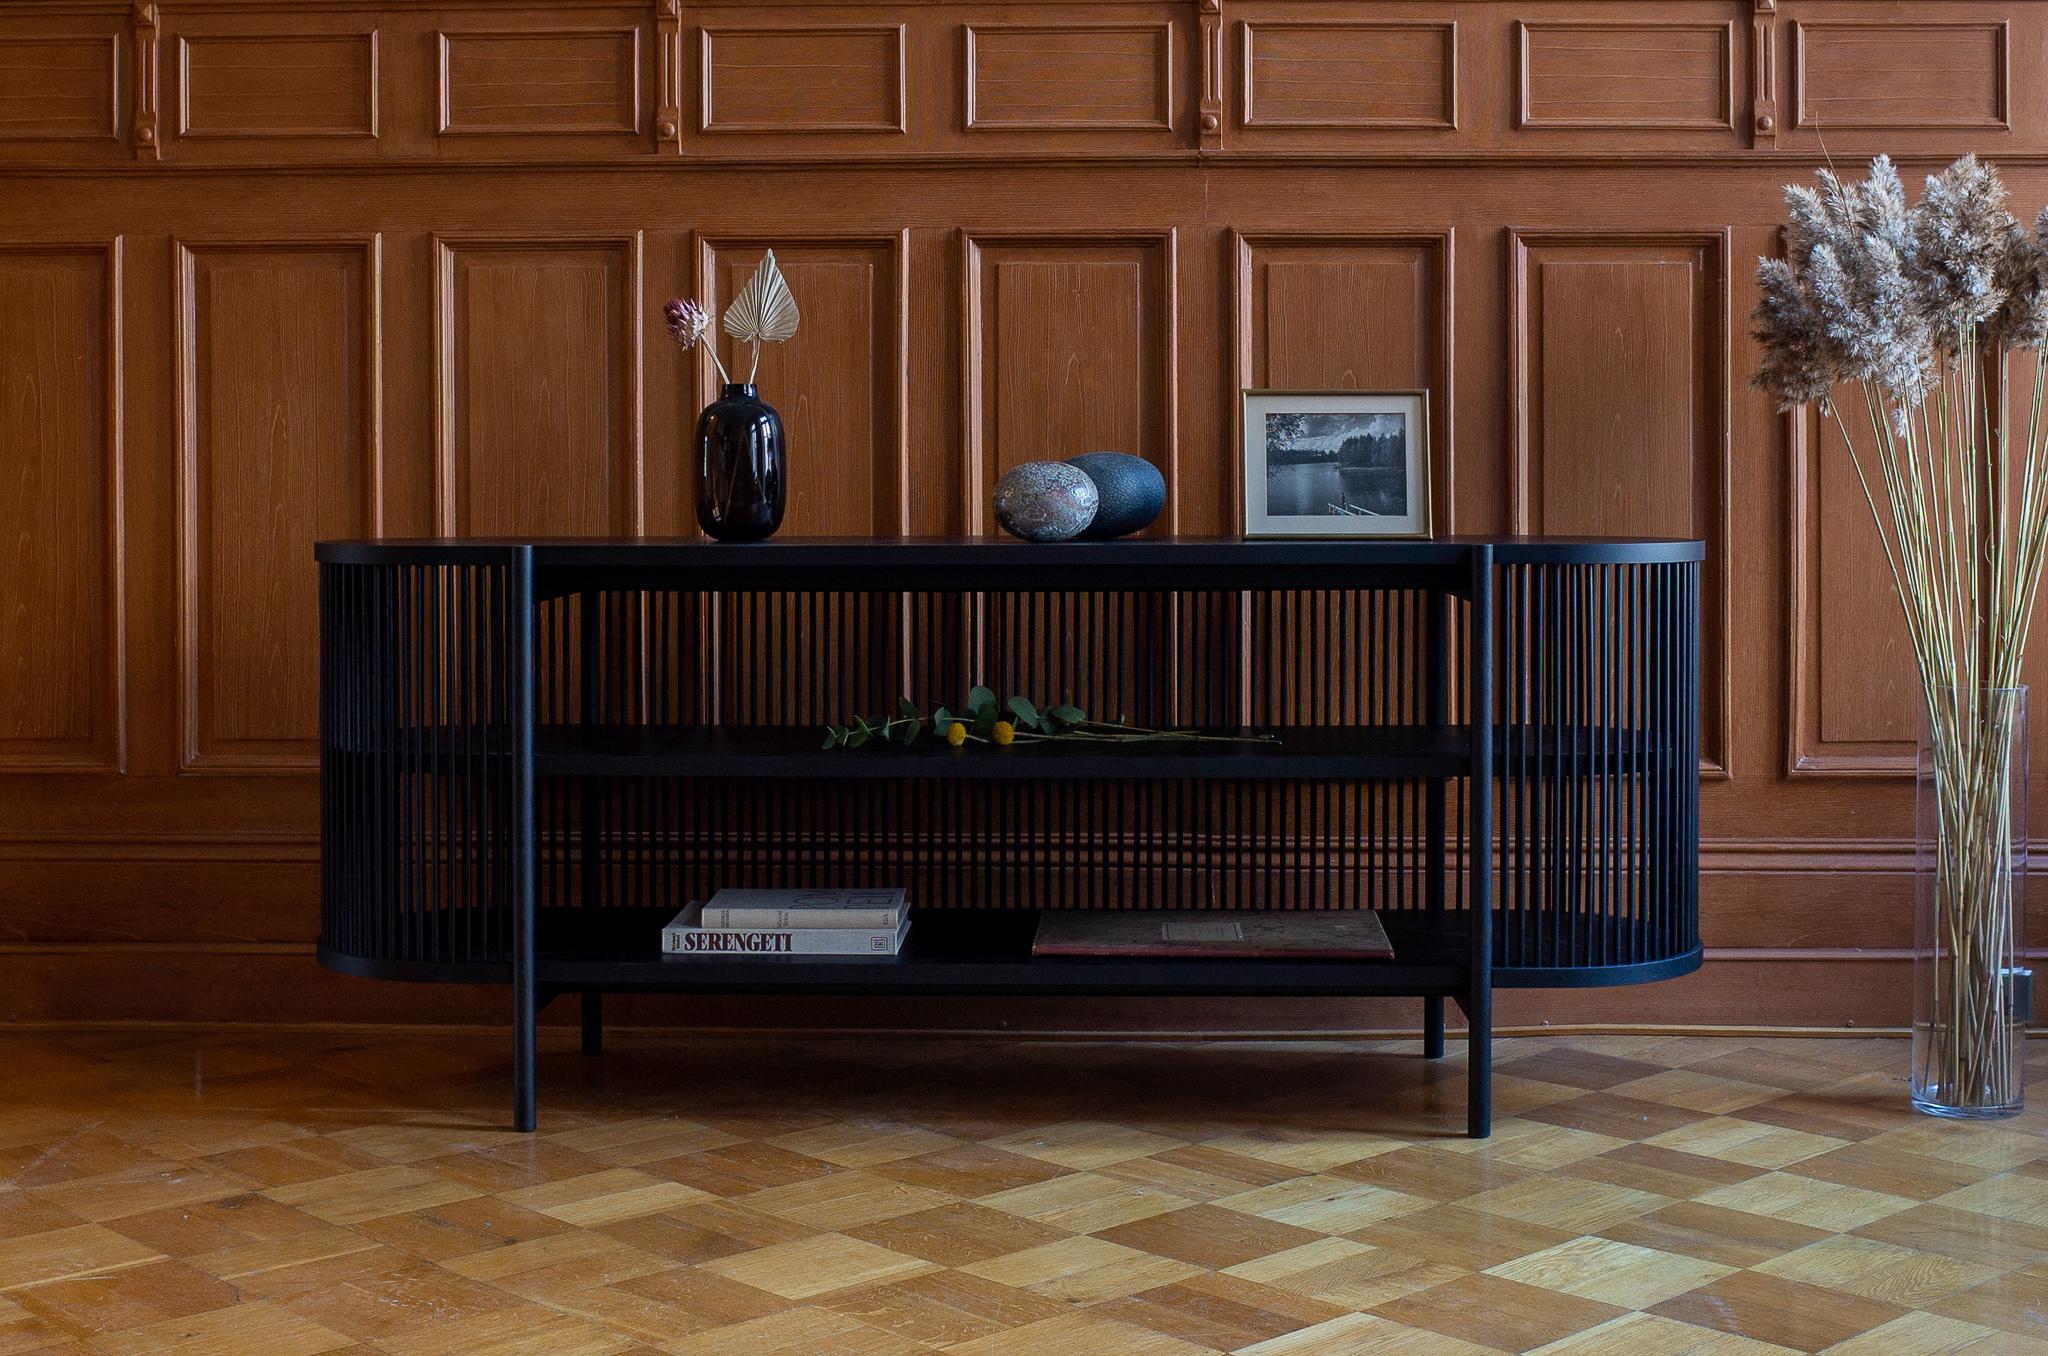 La collection de meubles de rangement Bastone, qui se compose d'une armoire et d'un buffet, a été conçue par le maître ébéniste et designer Antrei Hartikainen pour le studio Poiat. À la frontière de l'art et du design, la collection illustre